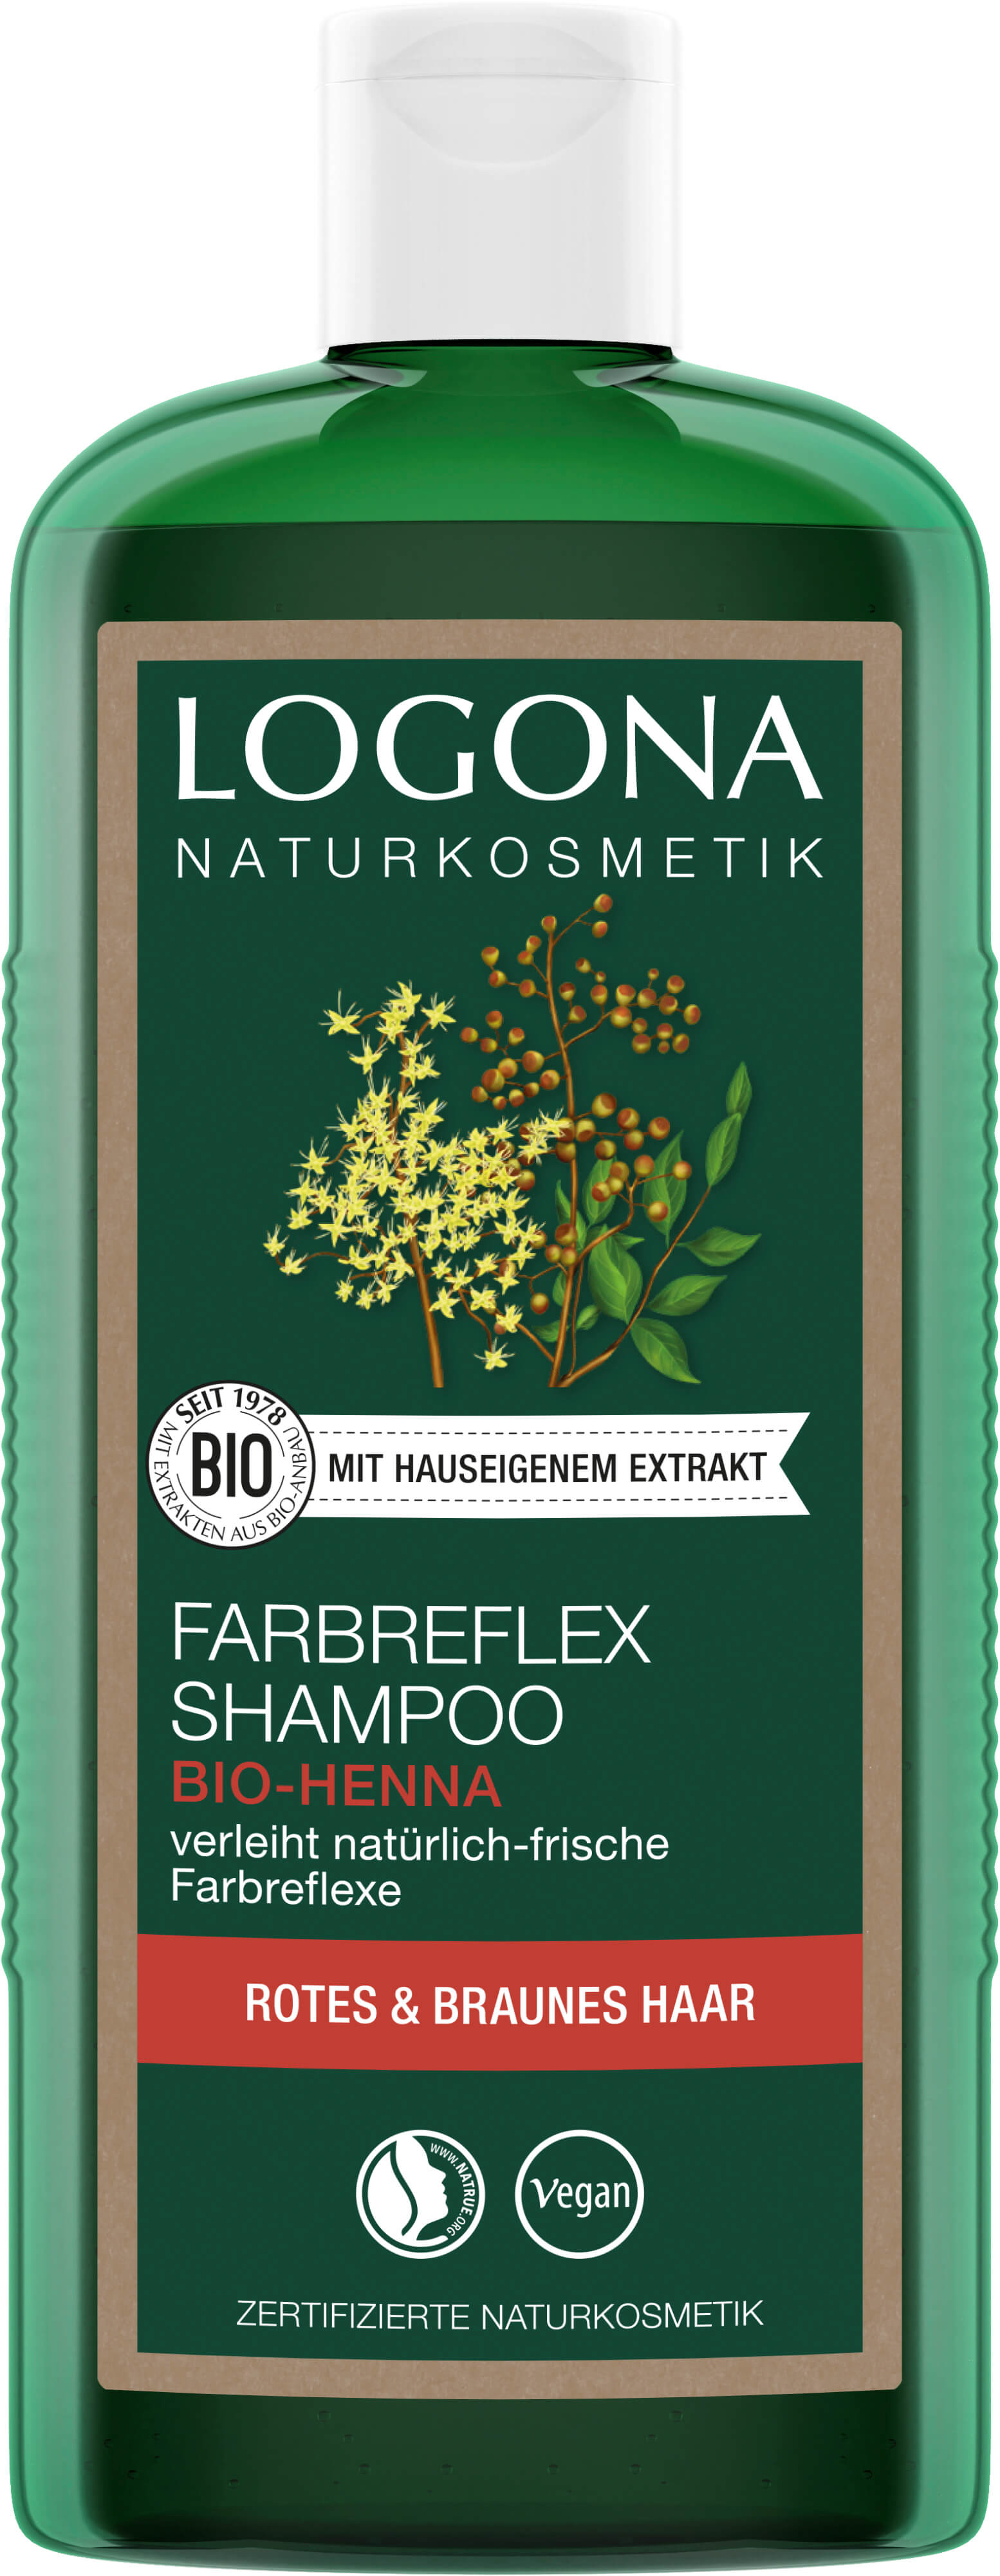 Rot-Braun Shampoo bio-Henna LOGONA Farbreflex Naturkosmetik |